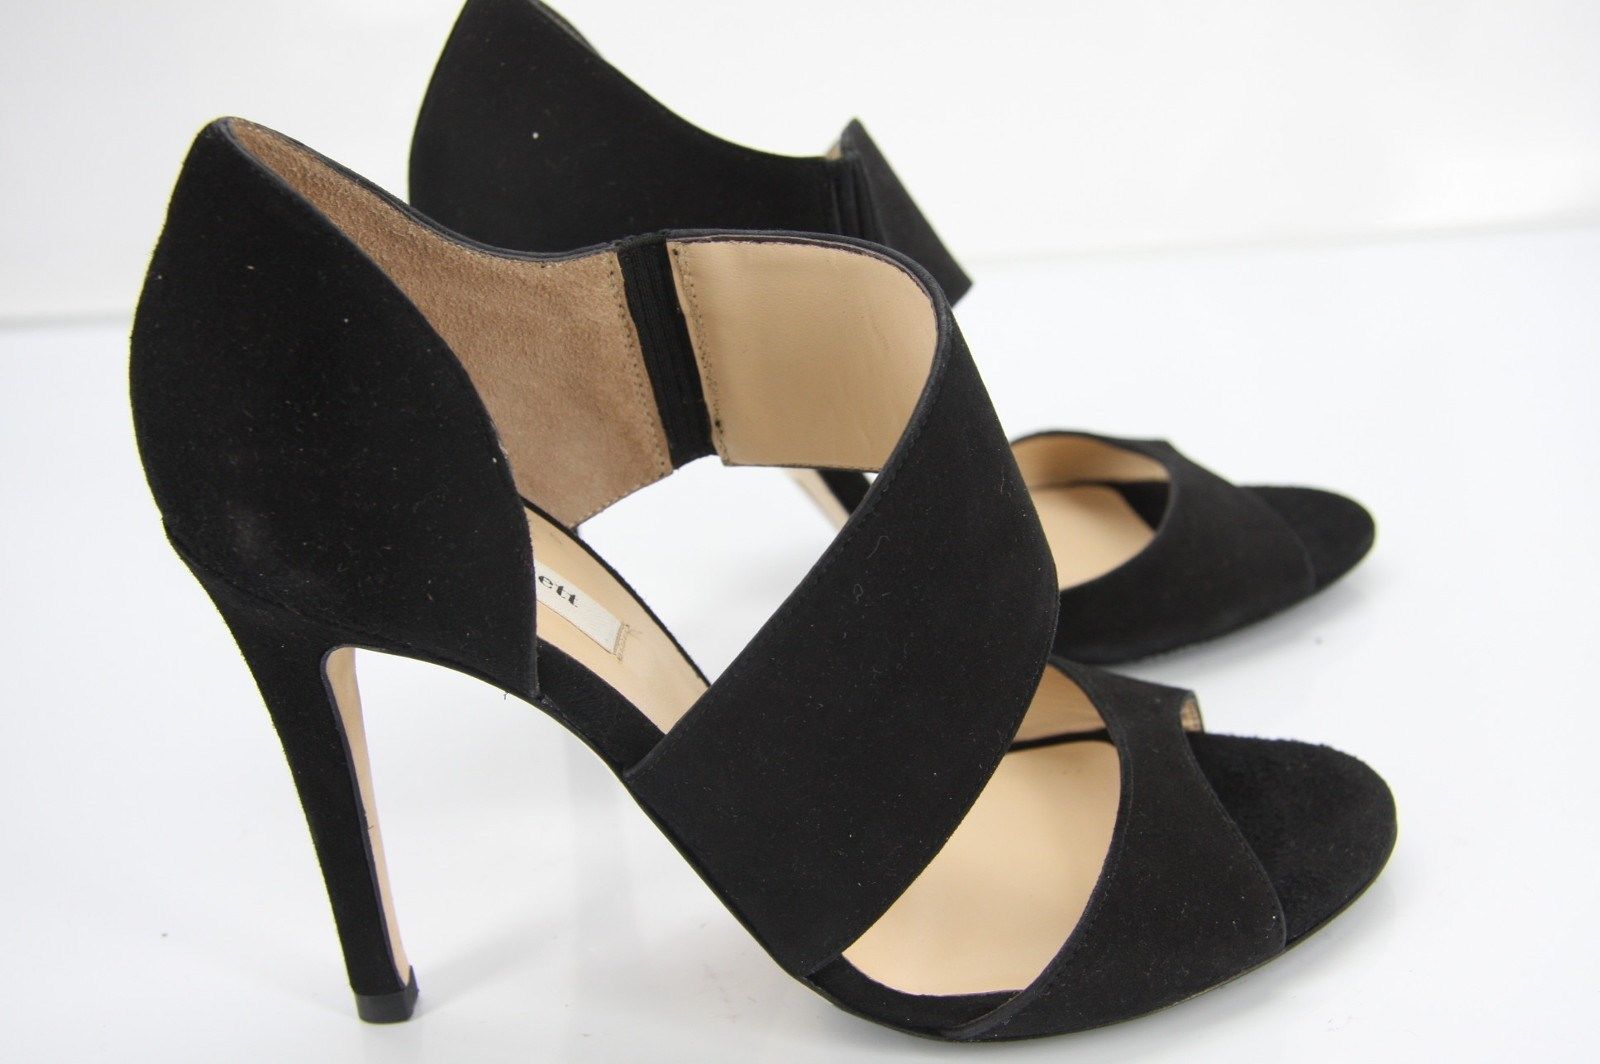 LK Bennett Black Suede Agnes Ankle Strap Sandals size 37 High Heels $395 UK Sz